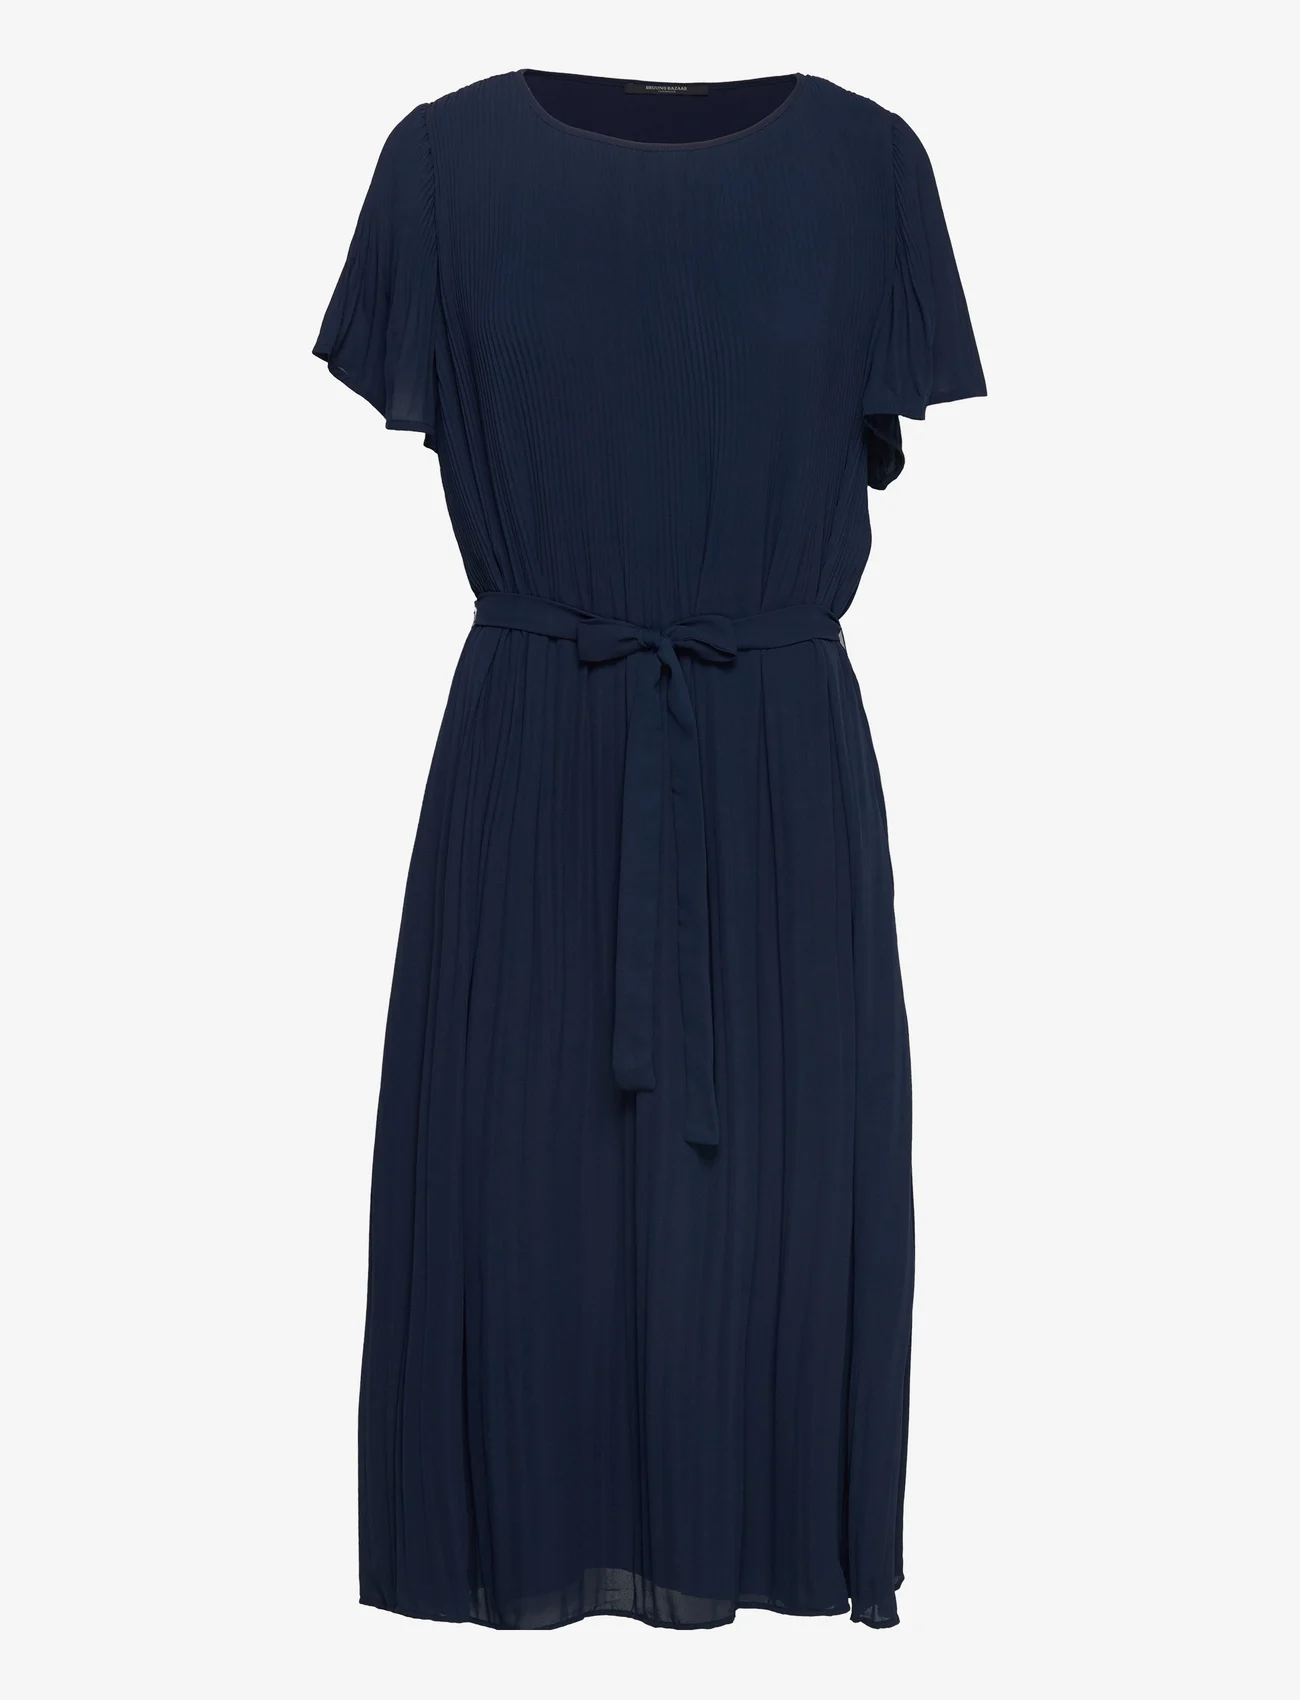 Bruuns Bazaar - Pearl Zilla dress - midi kjoler - navy - 0